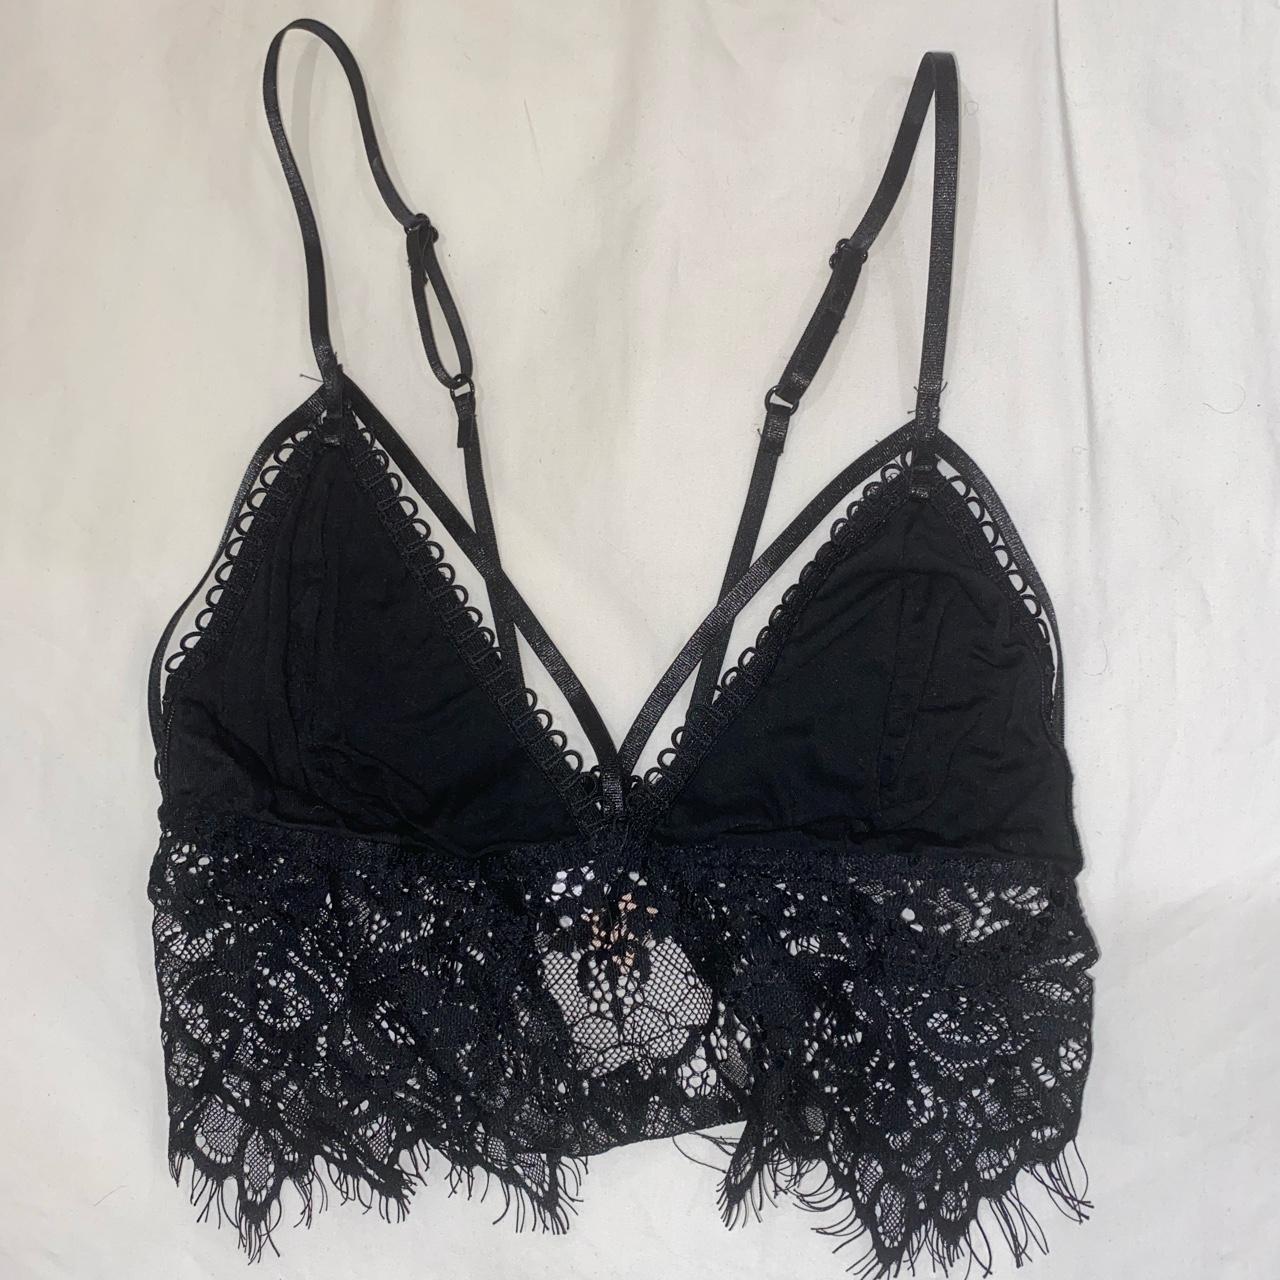 Reverse lace and cotton bra top 🖤 Size XS (AU6) 🖤... - Depop